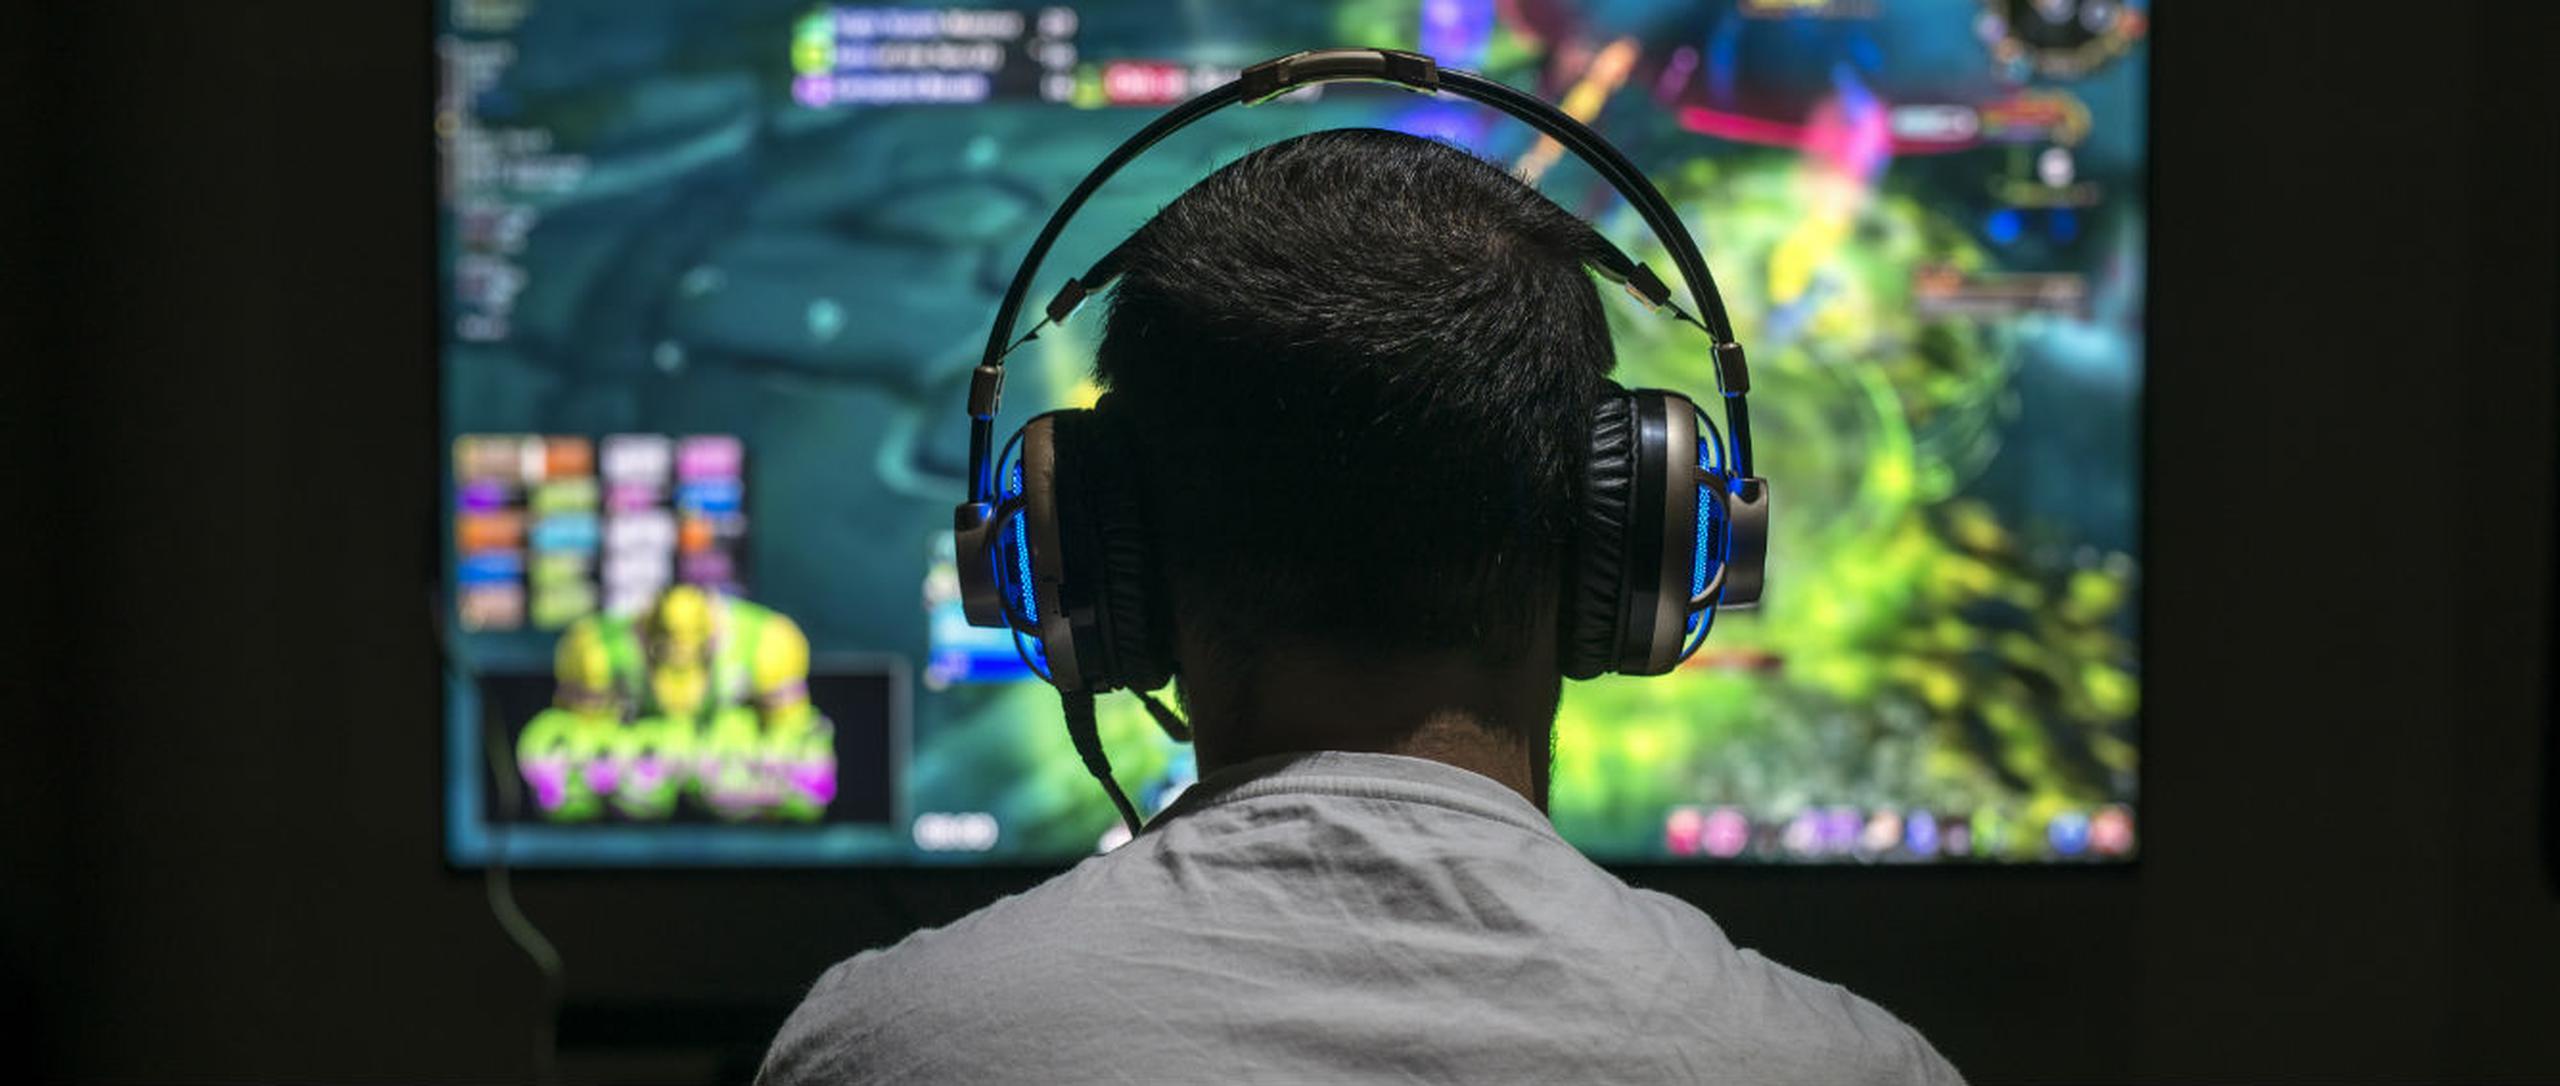 El uso excesivo de videojuegos puede generar efectos adversos. (Shutterstock)